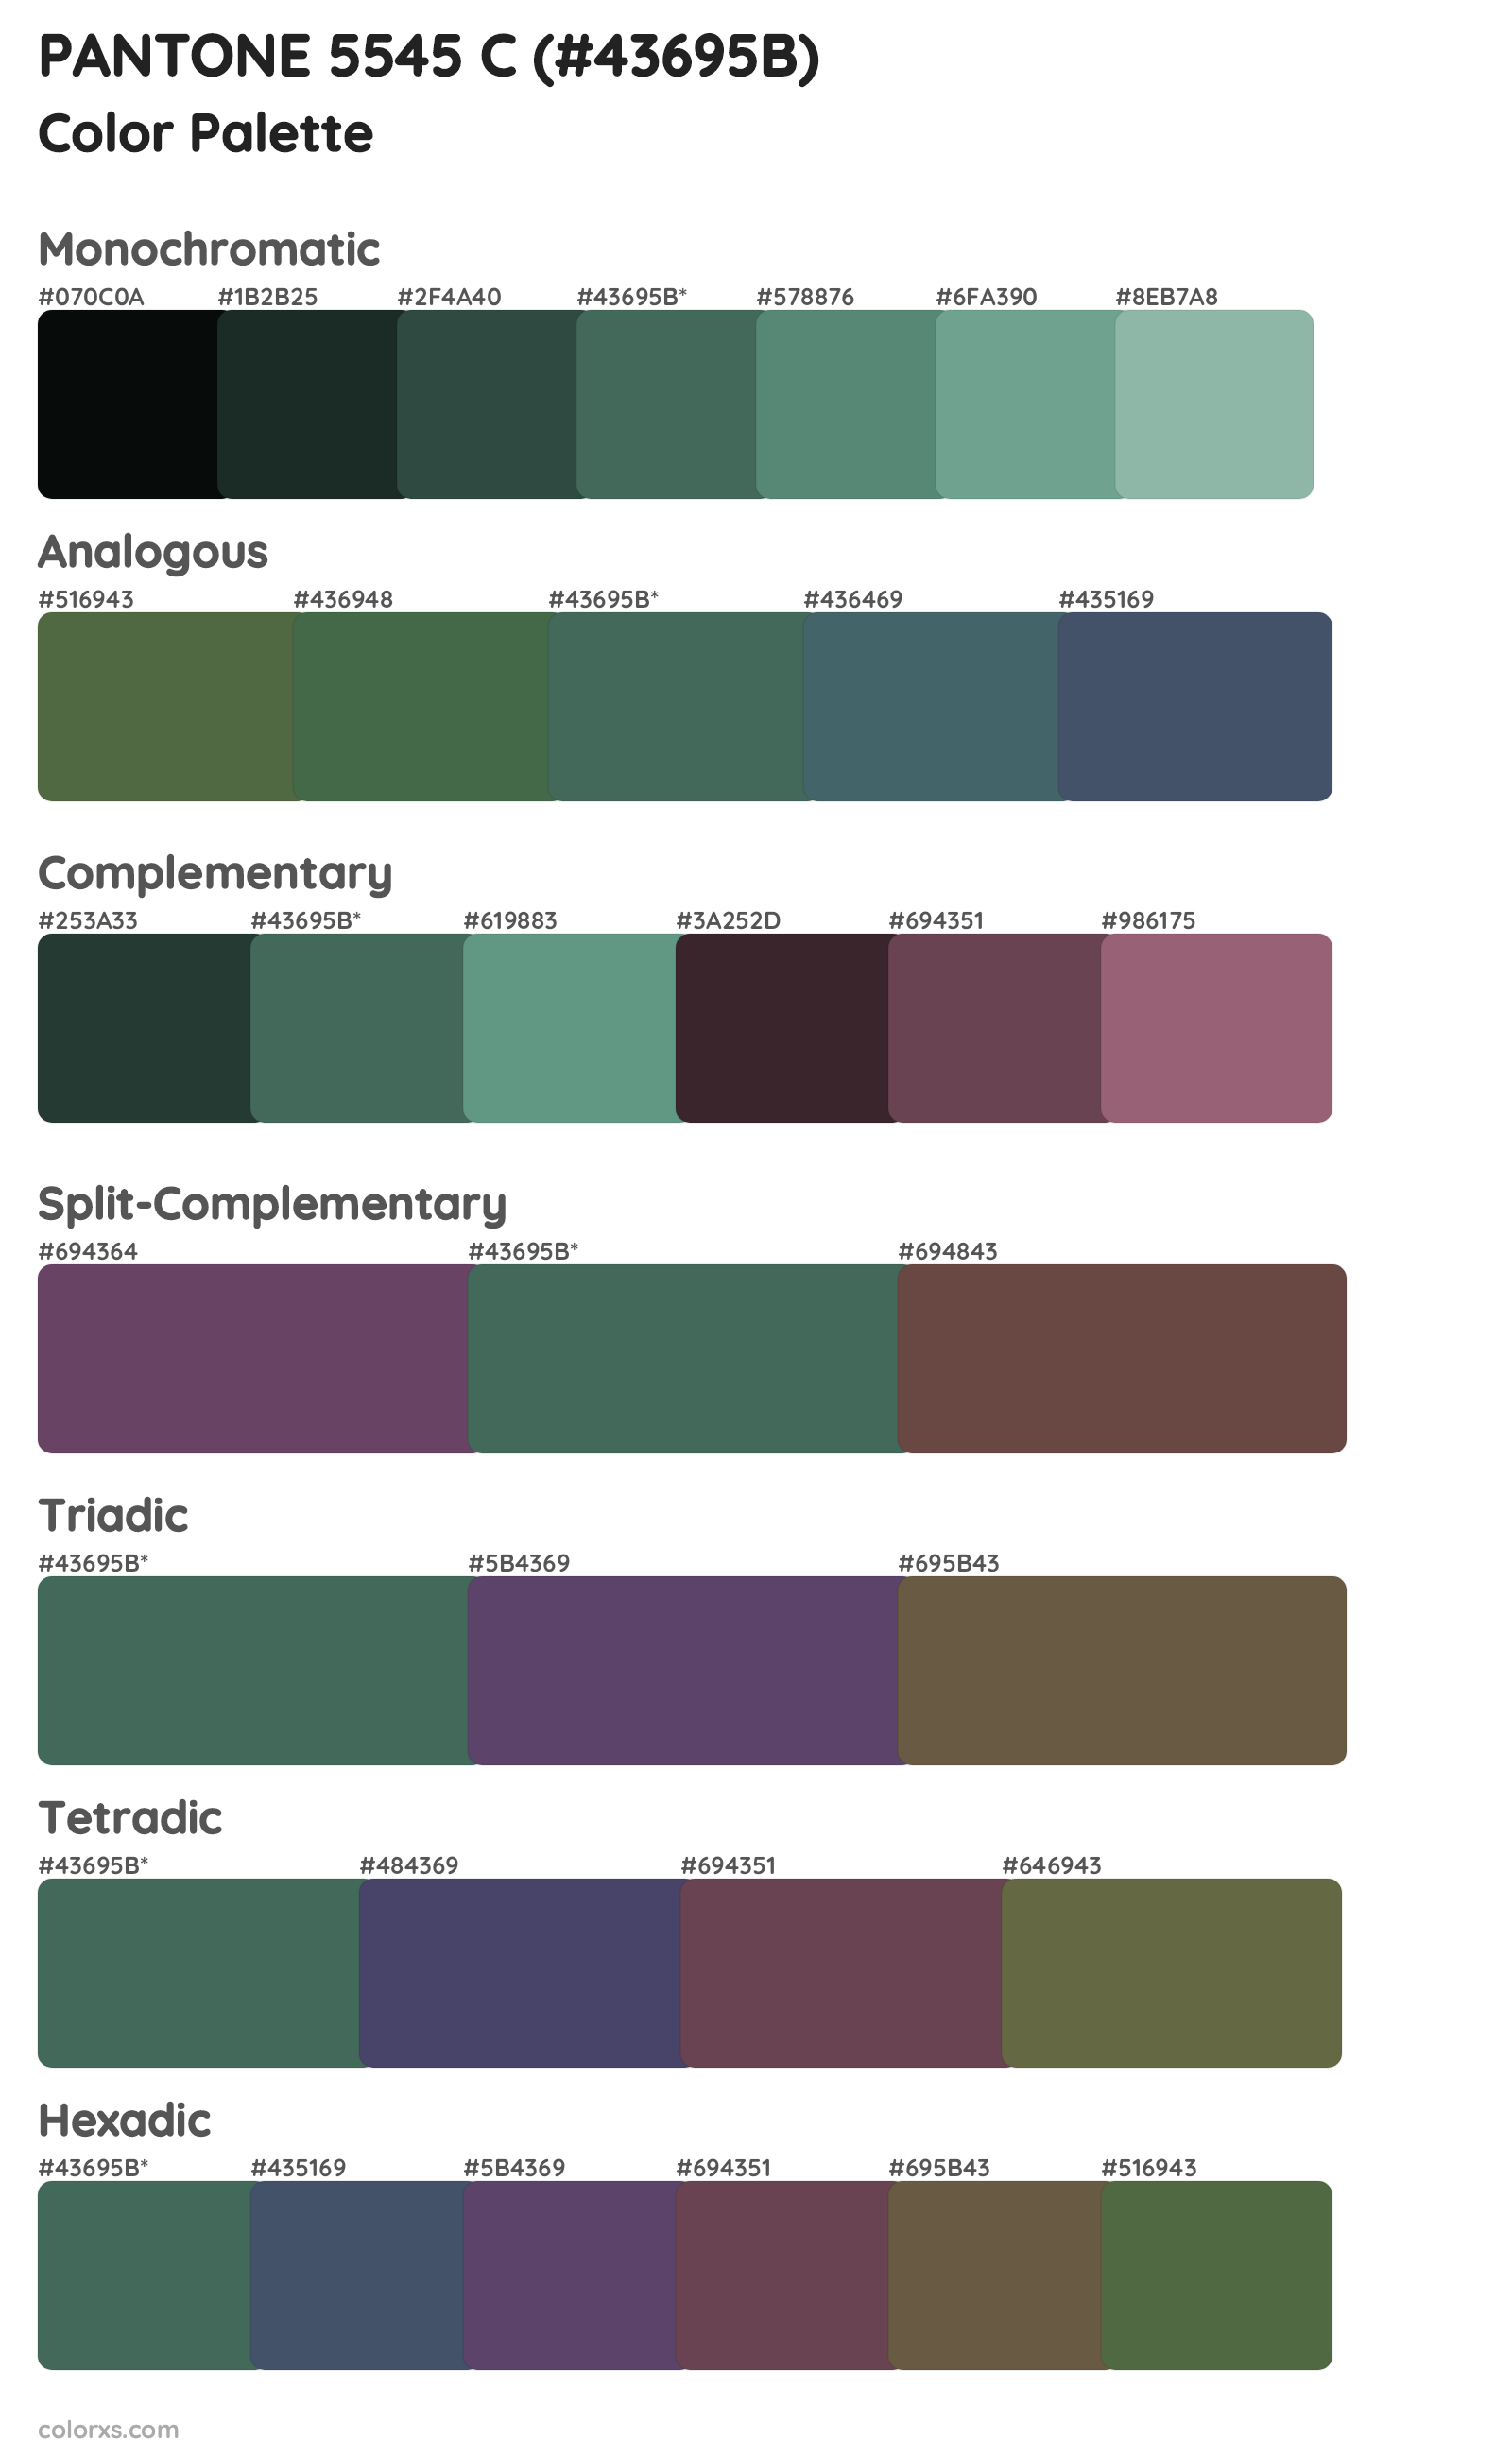 PANTONE 5545 C Color Scheme Palettes